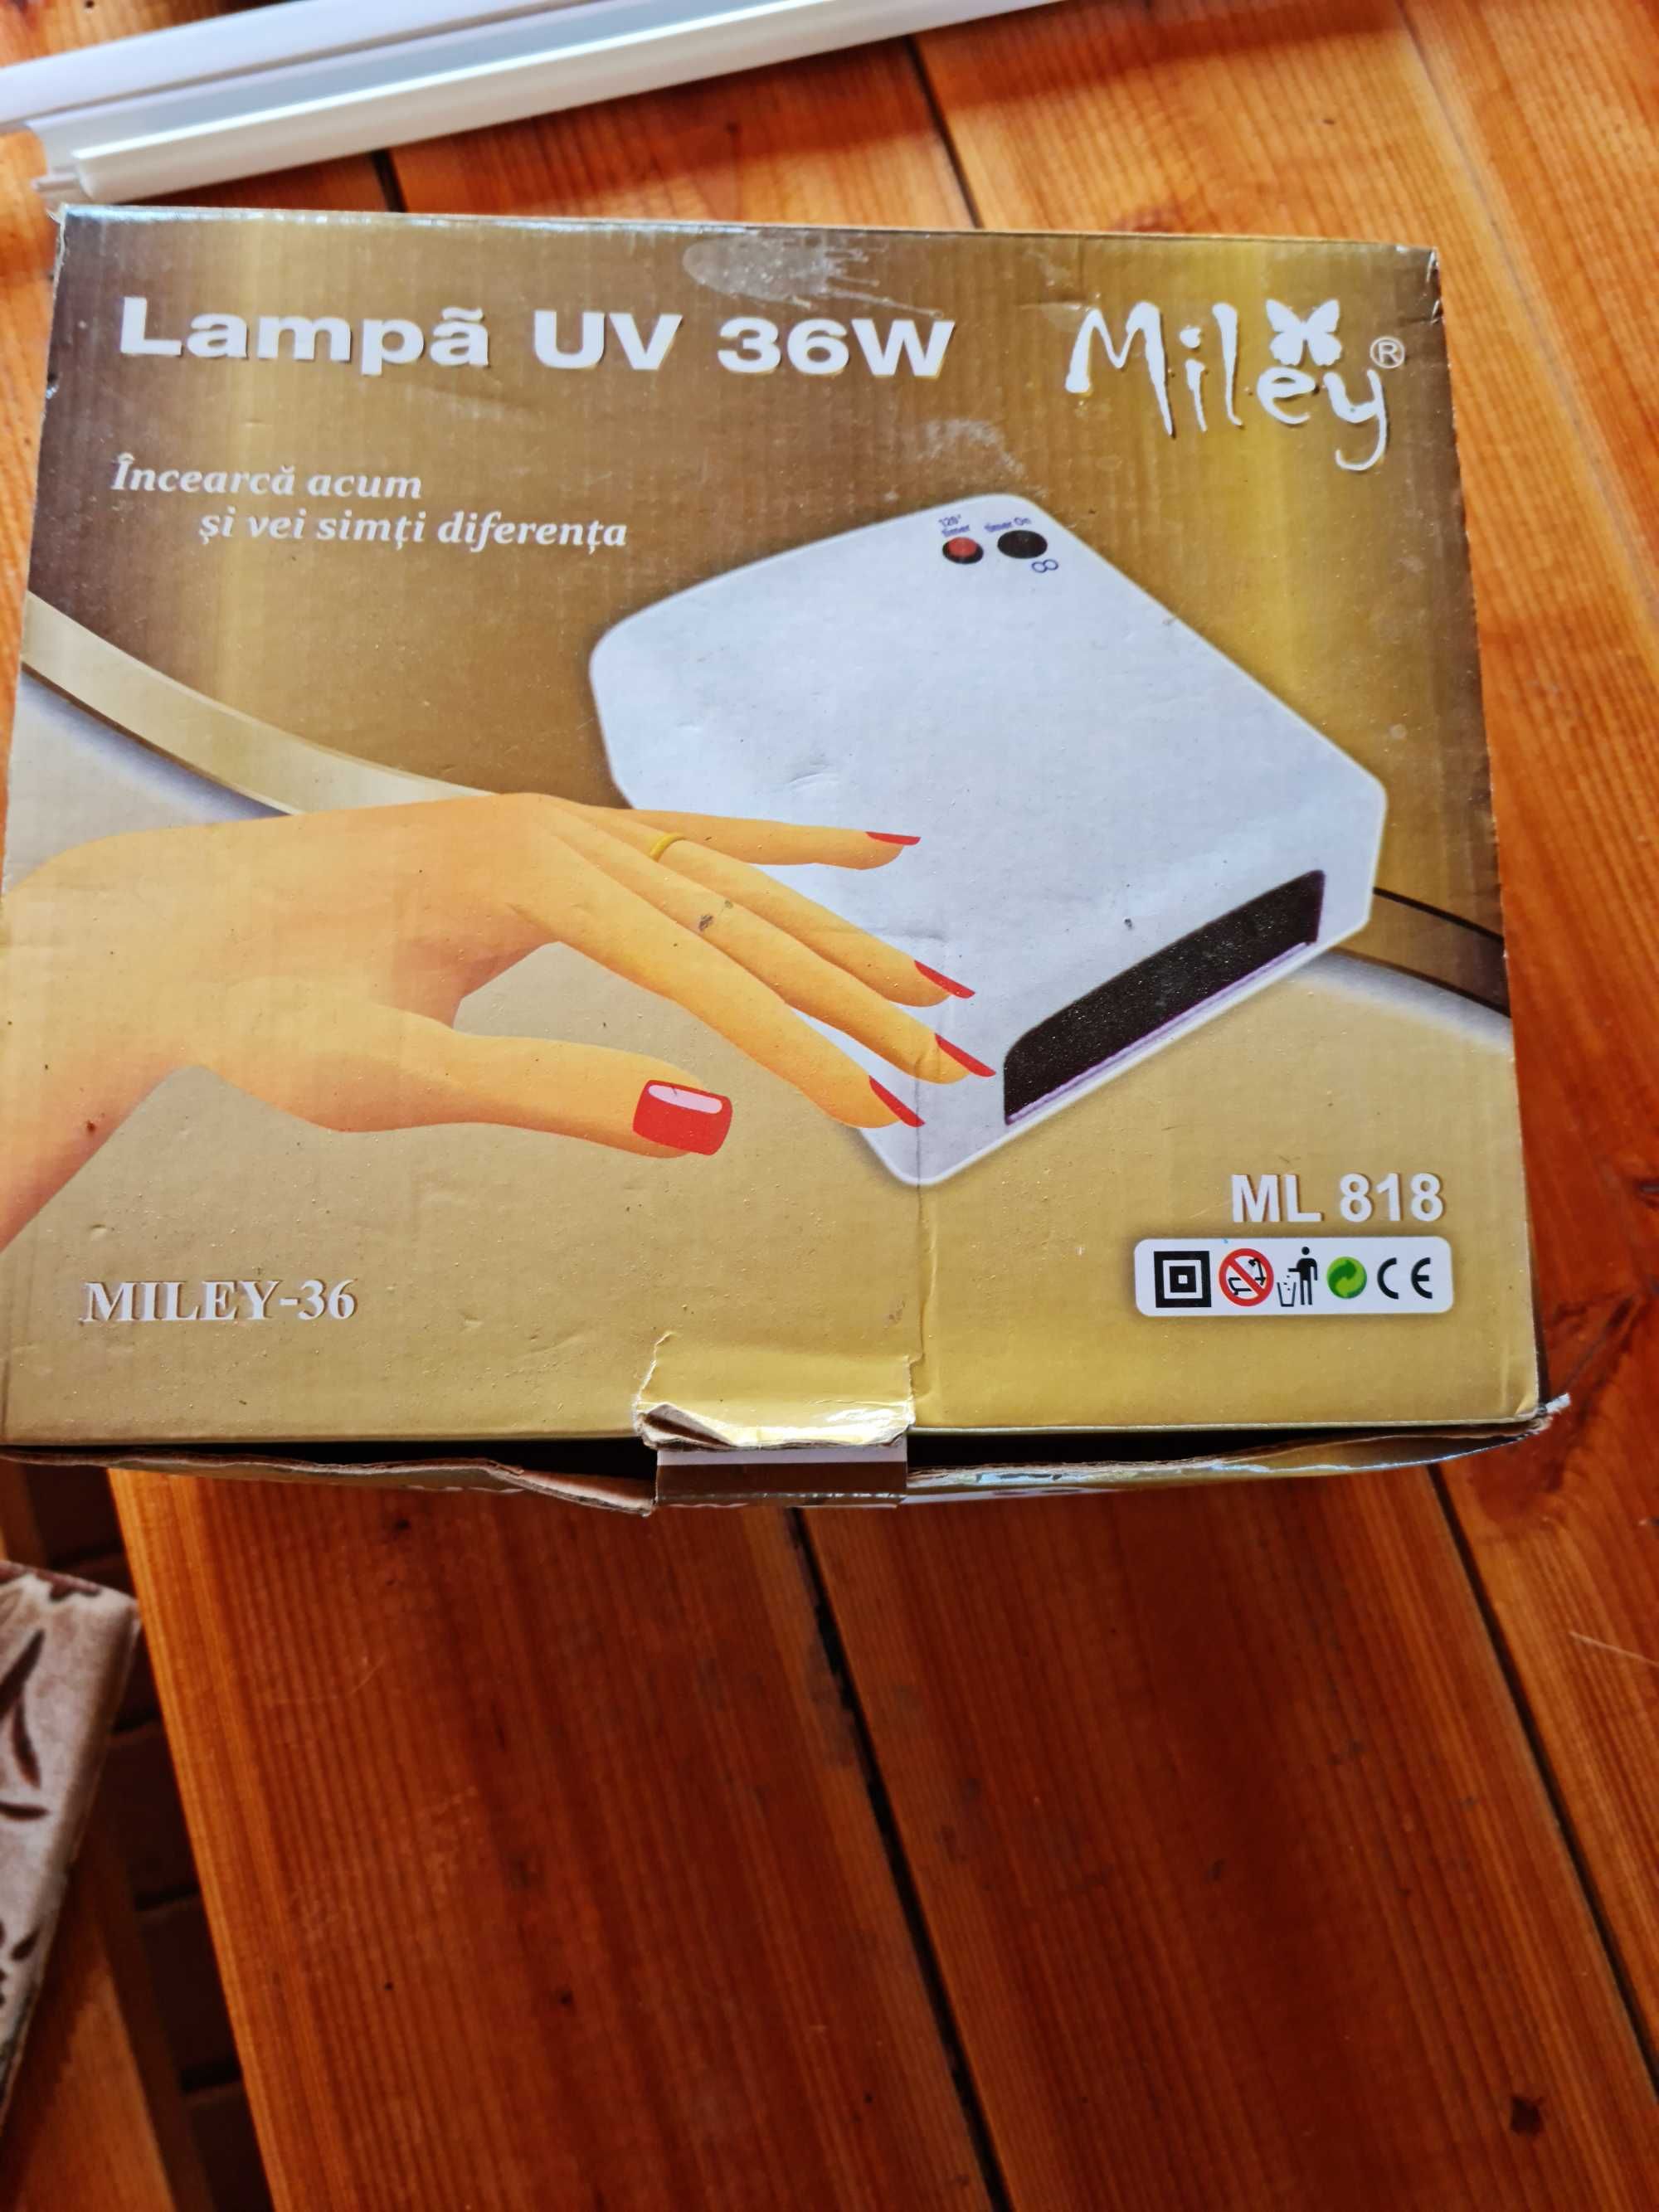 Lampa Pentru Uscare Unghii, 4 neoane UV, 36W